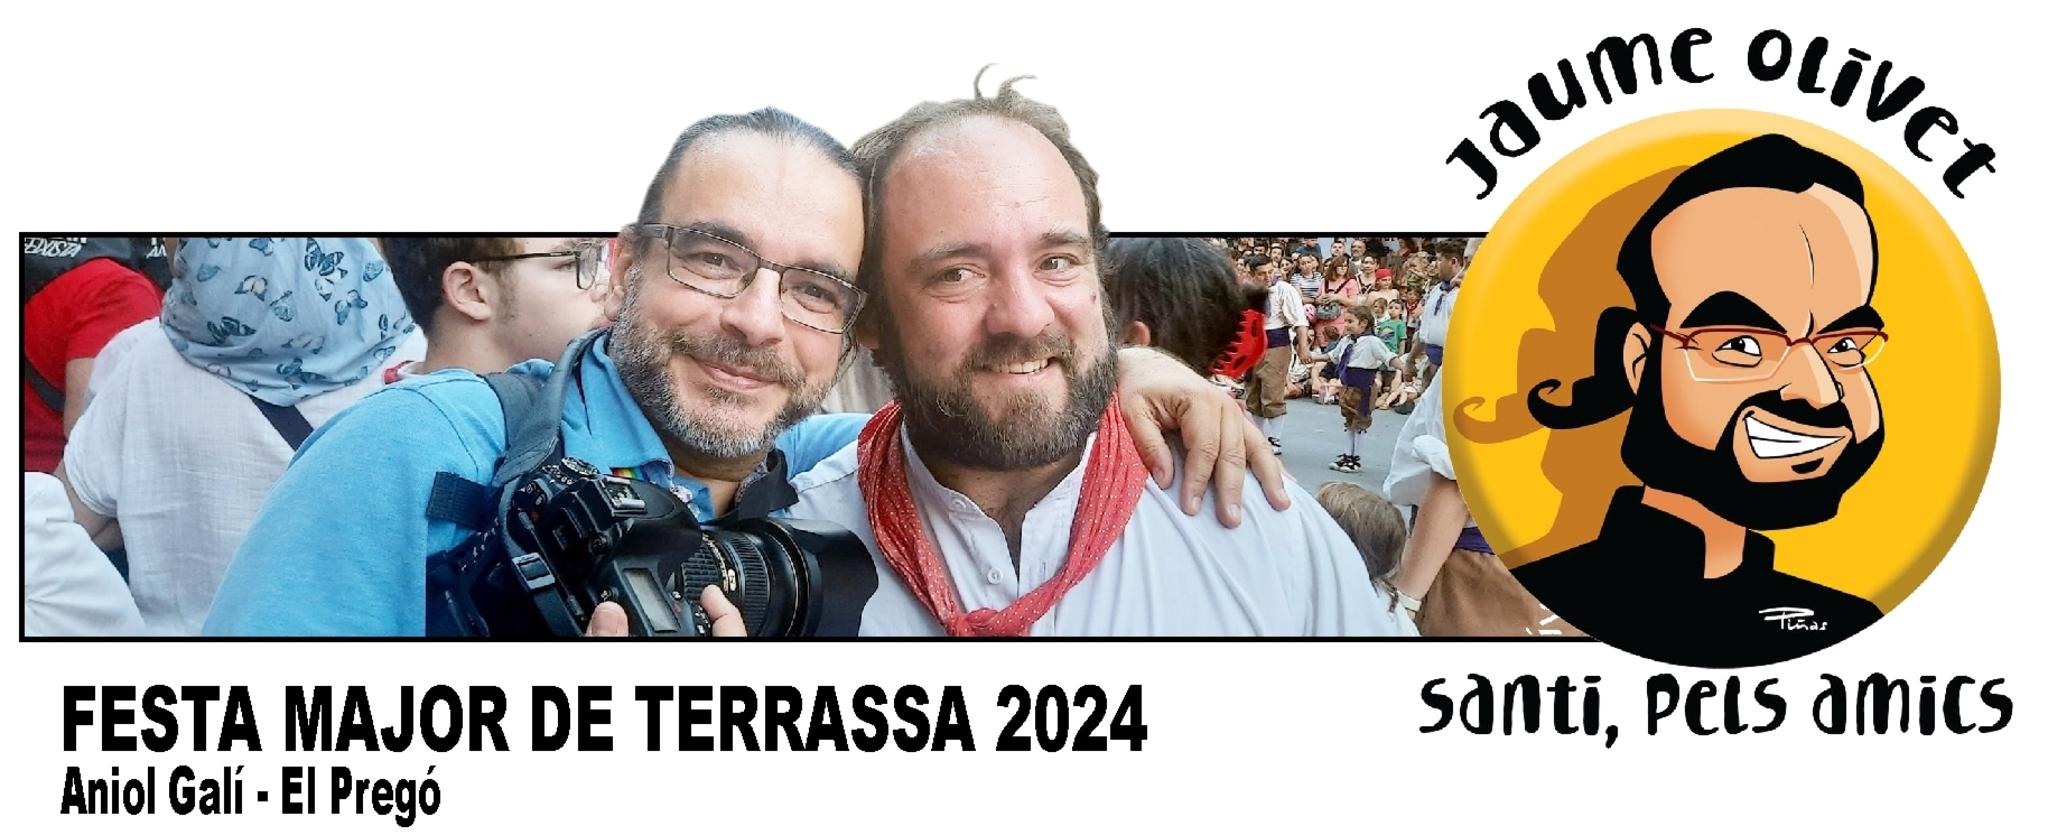  Jaume Olivet 2024